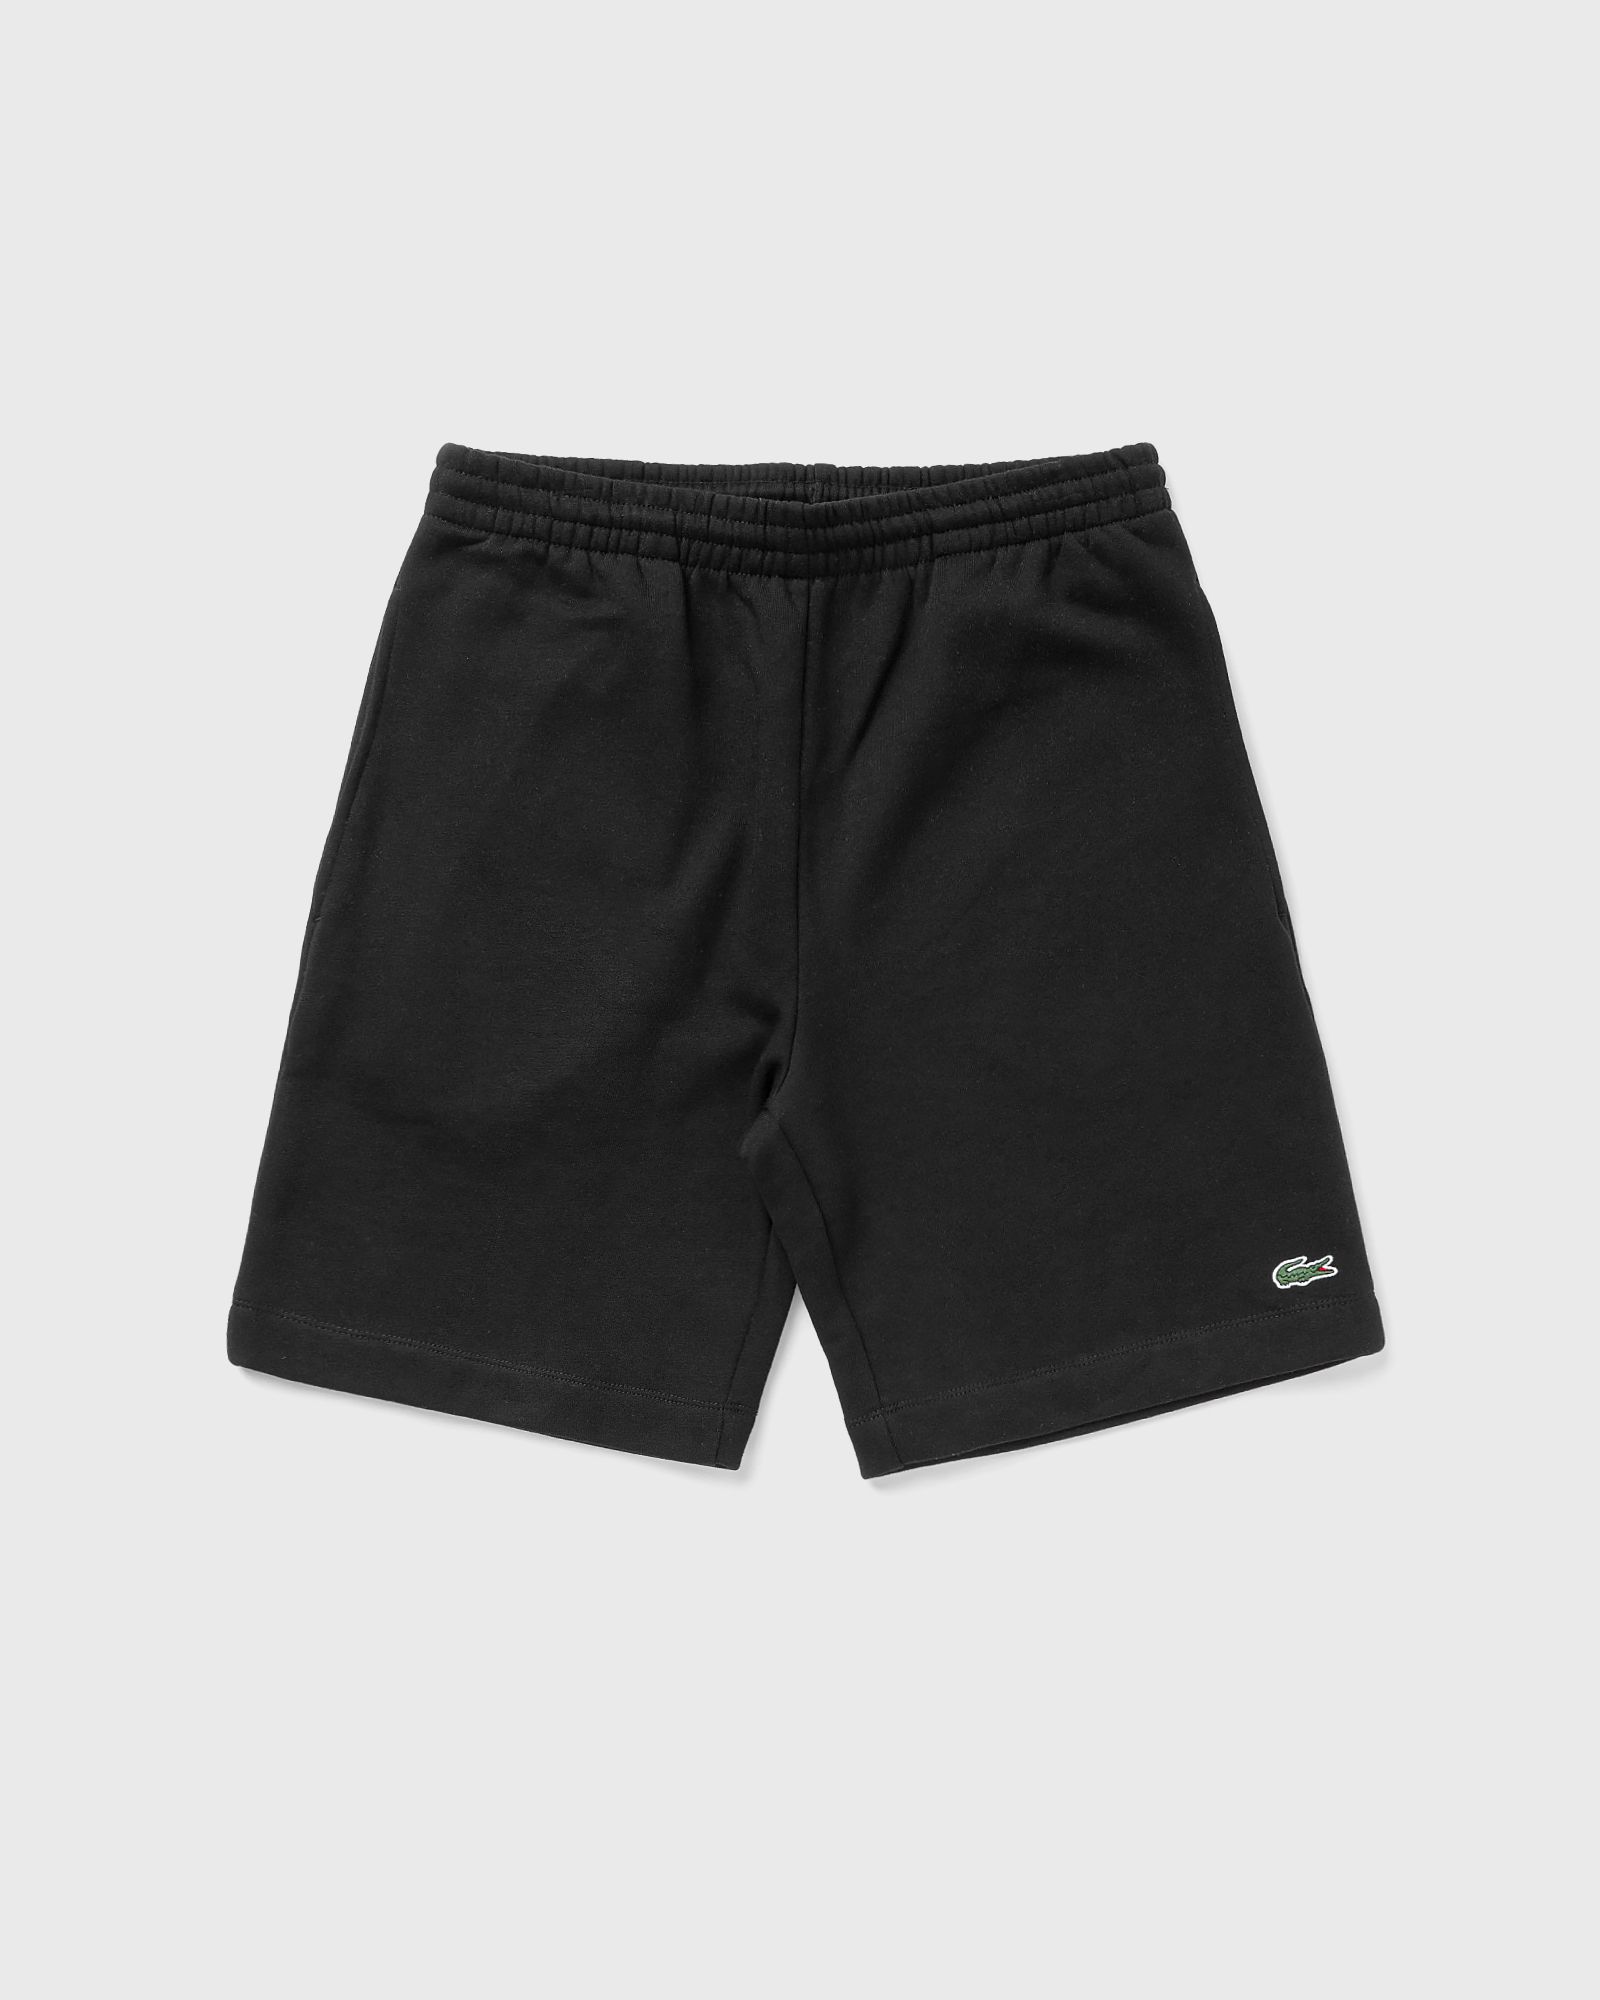 Lacoste - short men sport & team shorts black in größe:xxl